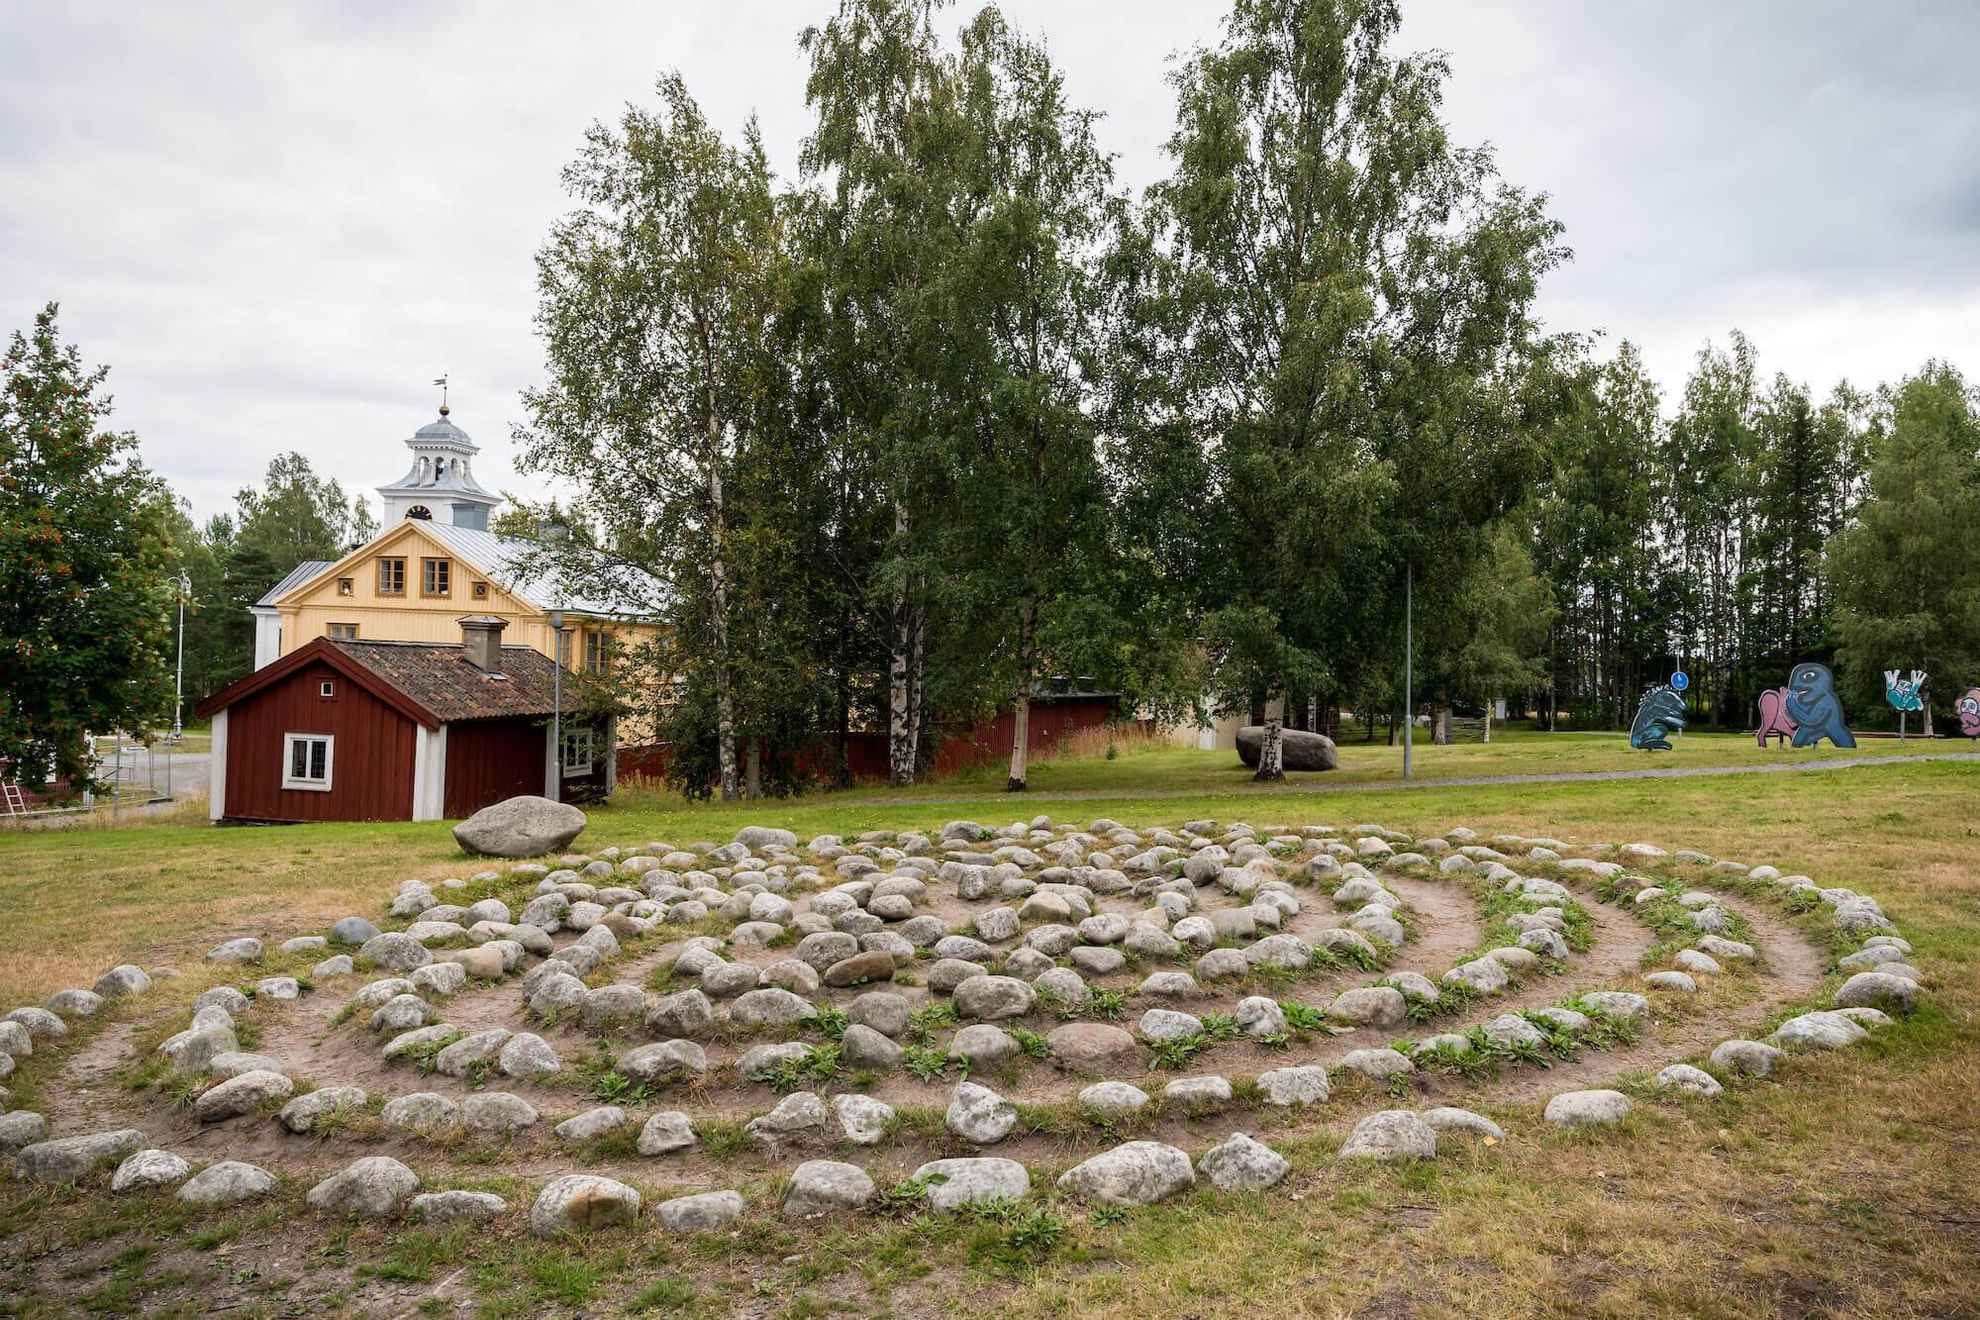 Steine, die in einem Kreis angeordnet sind, der ein Labyrinth in einem von Grün umgebenen Park bildet.